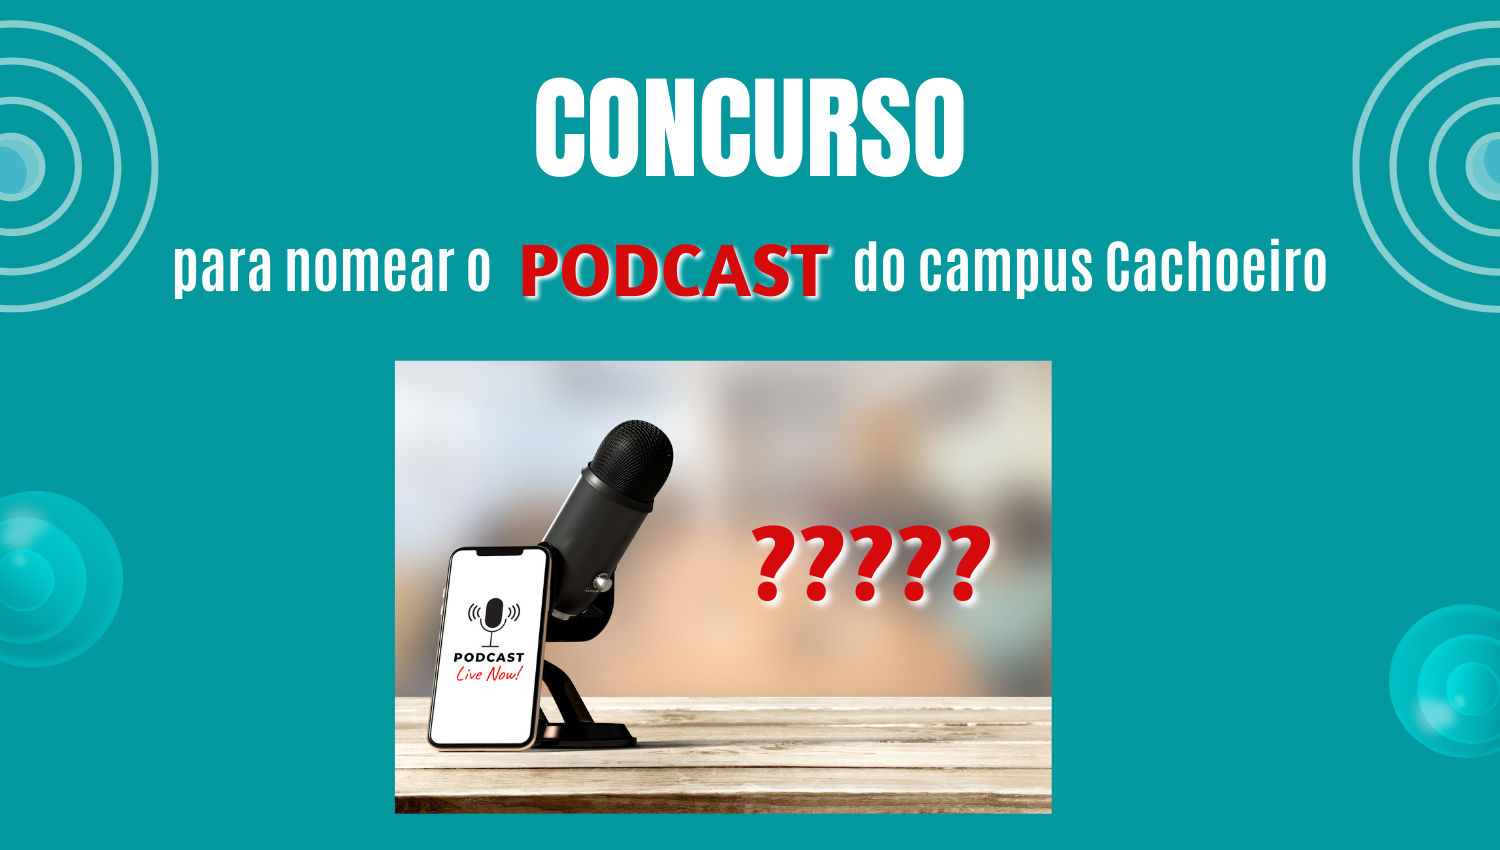 Participe do concurso nomeará o podcast do campus Cachoeiro de Itapemirim do Ifes